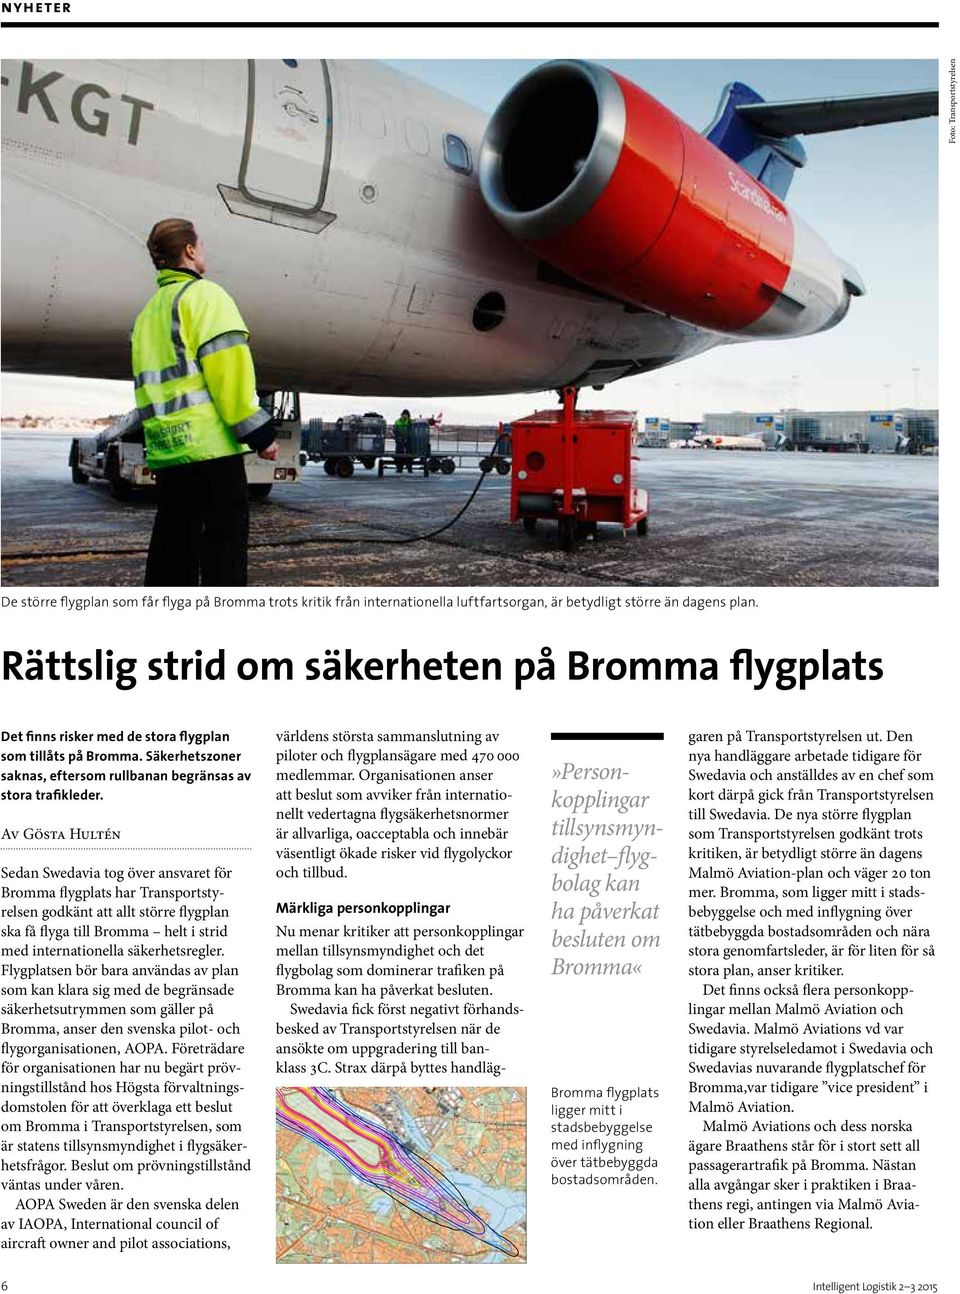 Av Gösta Hultén Sedan Swedavia tog över ansvaret för Bromma flygplats har Transportstyrelsen godkänt att allt större flygplan ska få flyga till Bromma helt i strid med internationella säkerhetsregler.